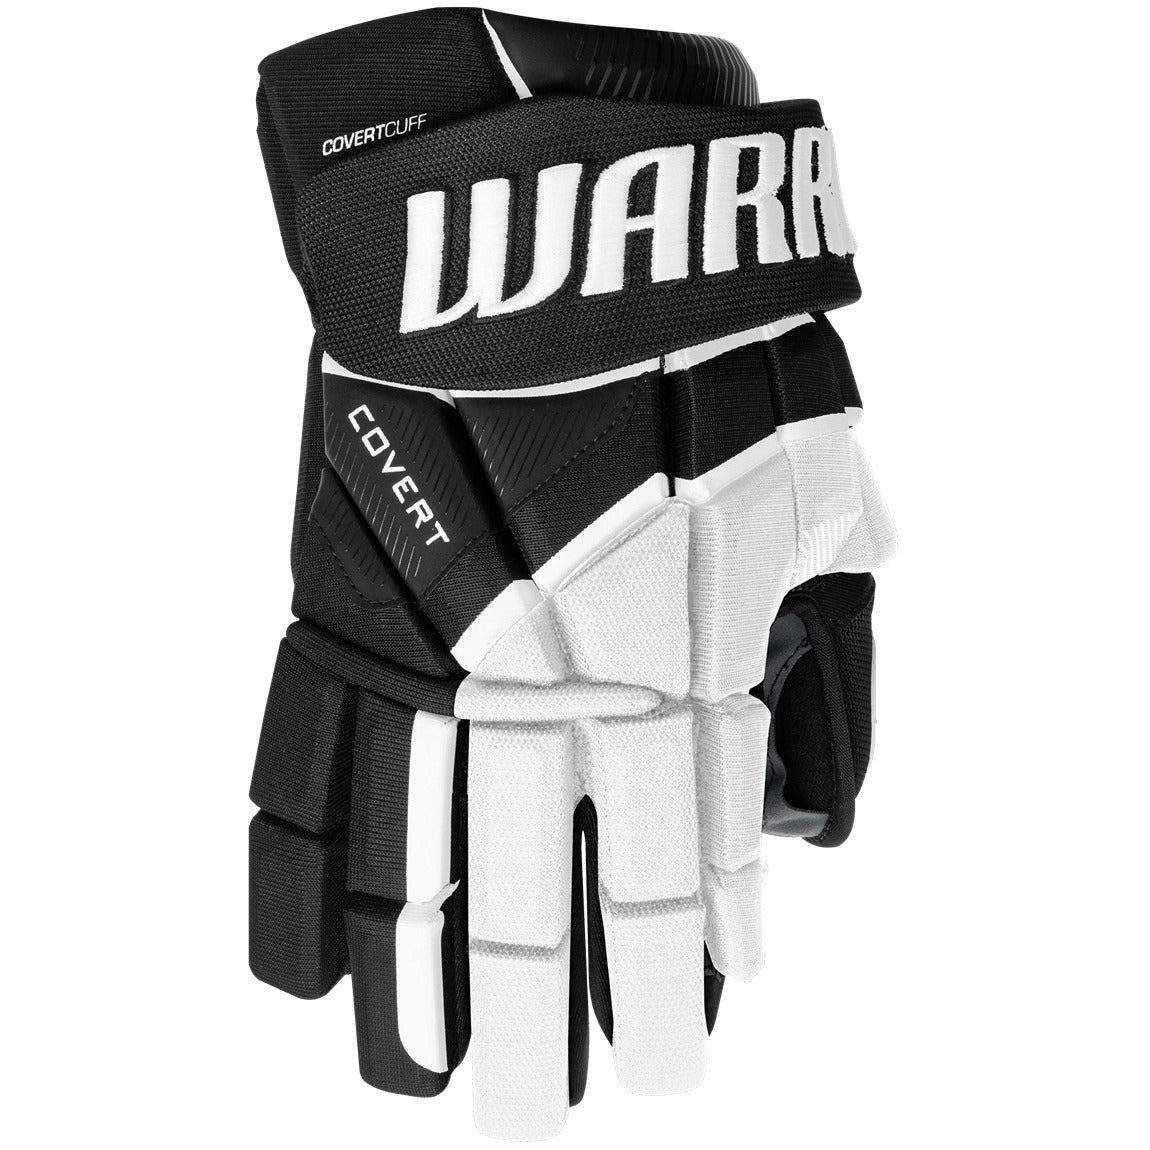 Warrior Covert QR6 Gloves - Senior